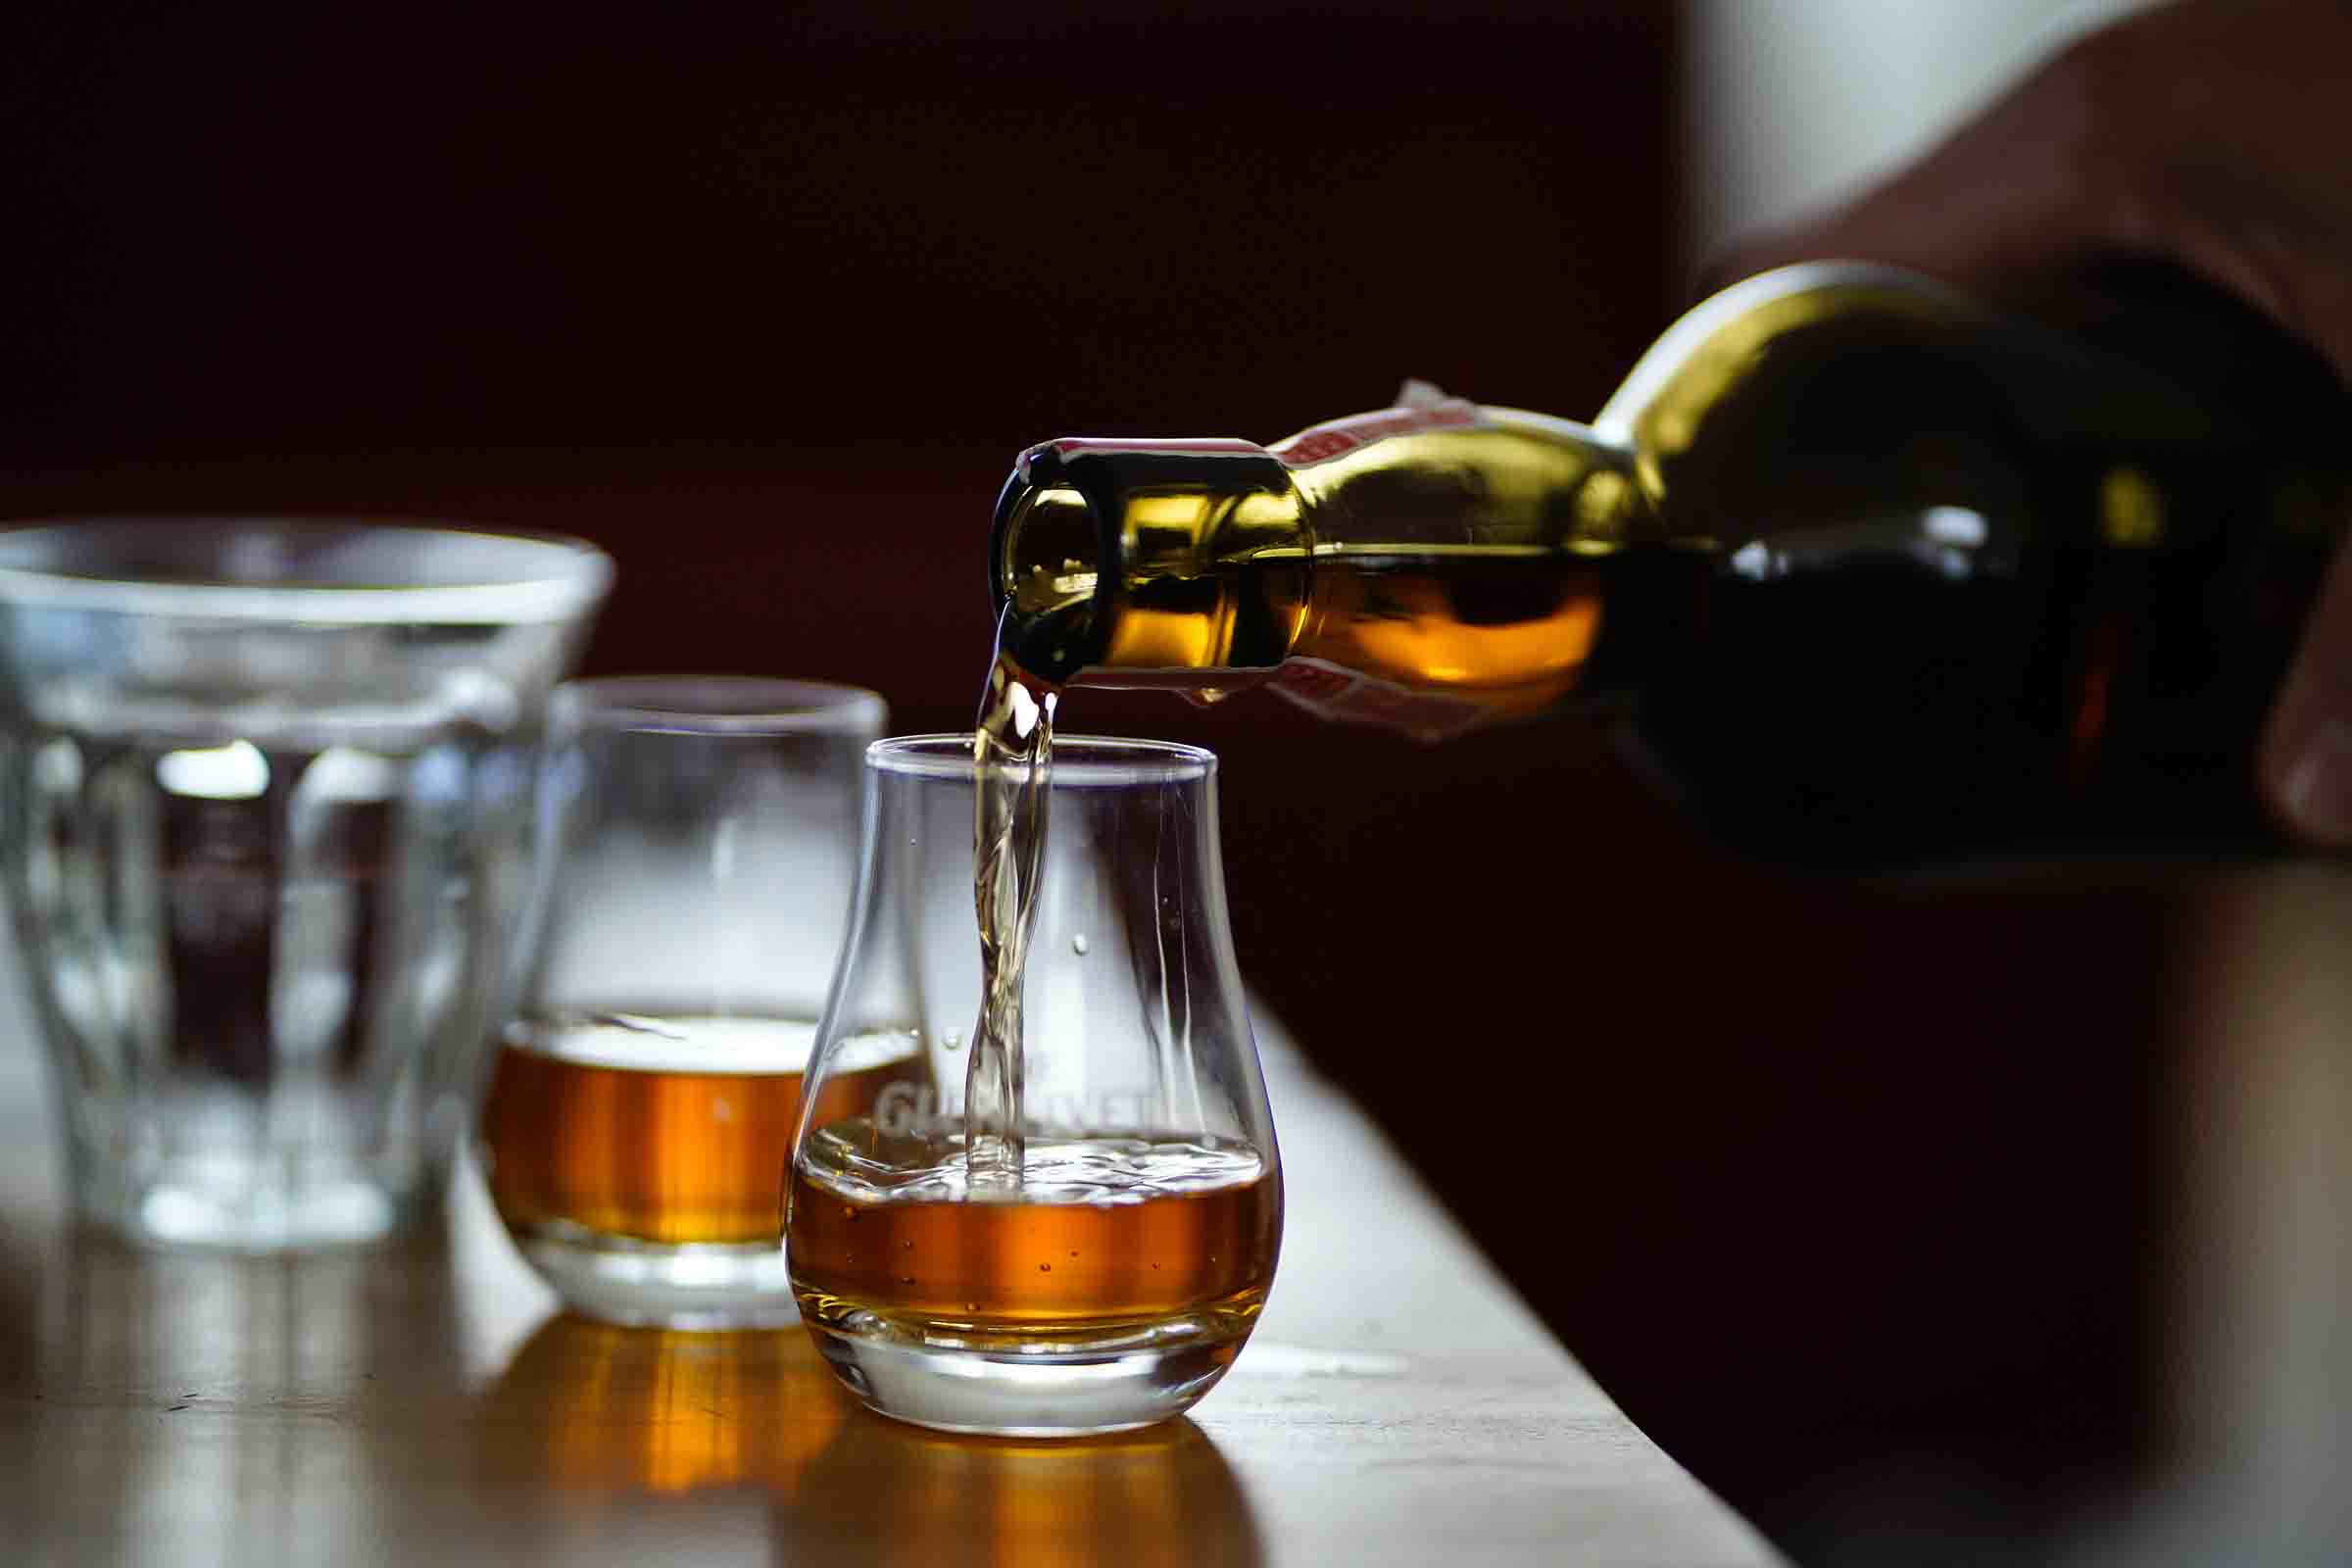 Whiskeyprovning: En smakupplevelse av en av världens mest populära spritsorter